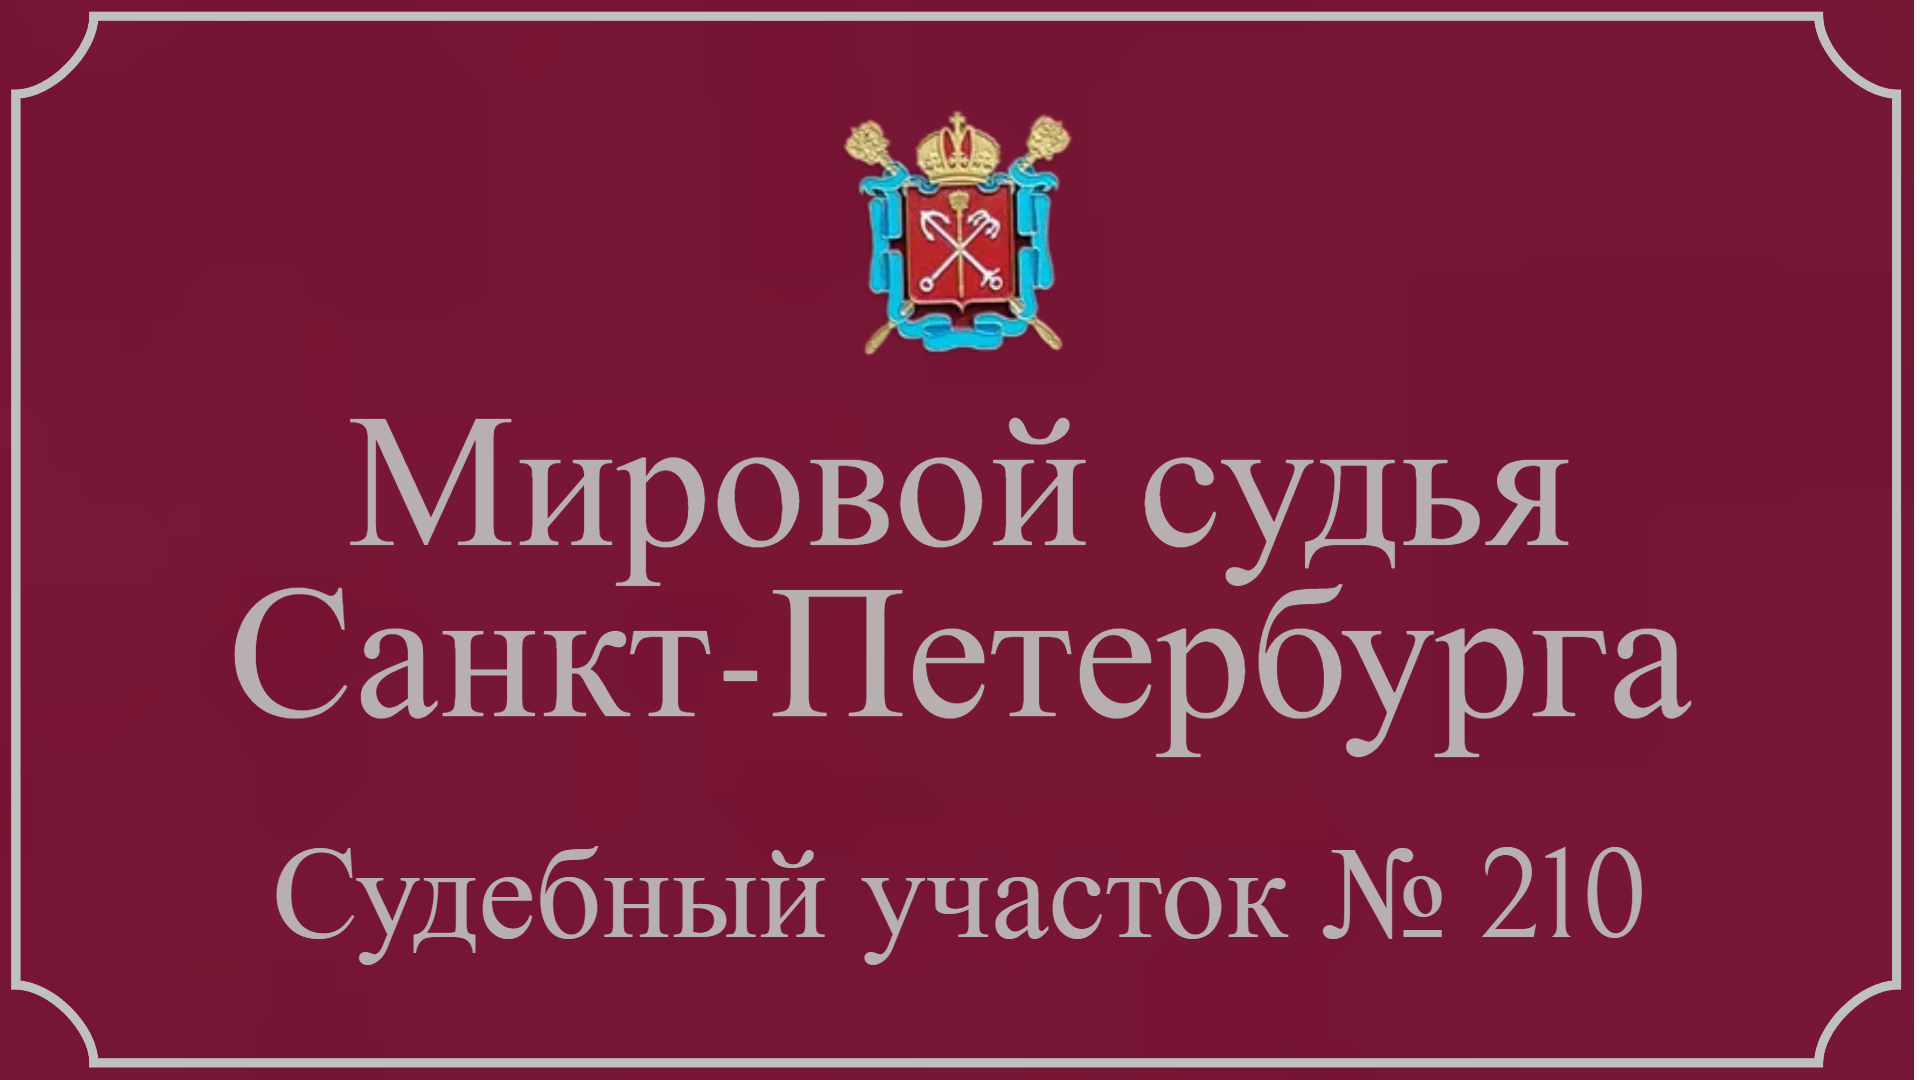 Информация по 210 судебному участку в Санкт-Петербурге.